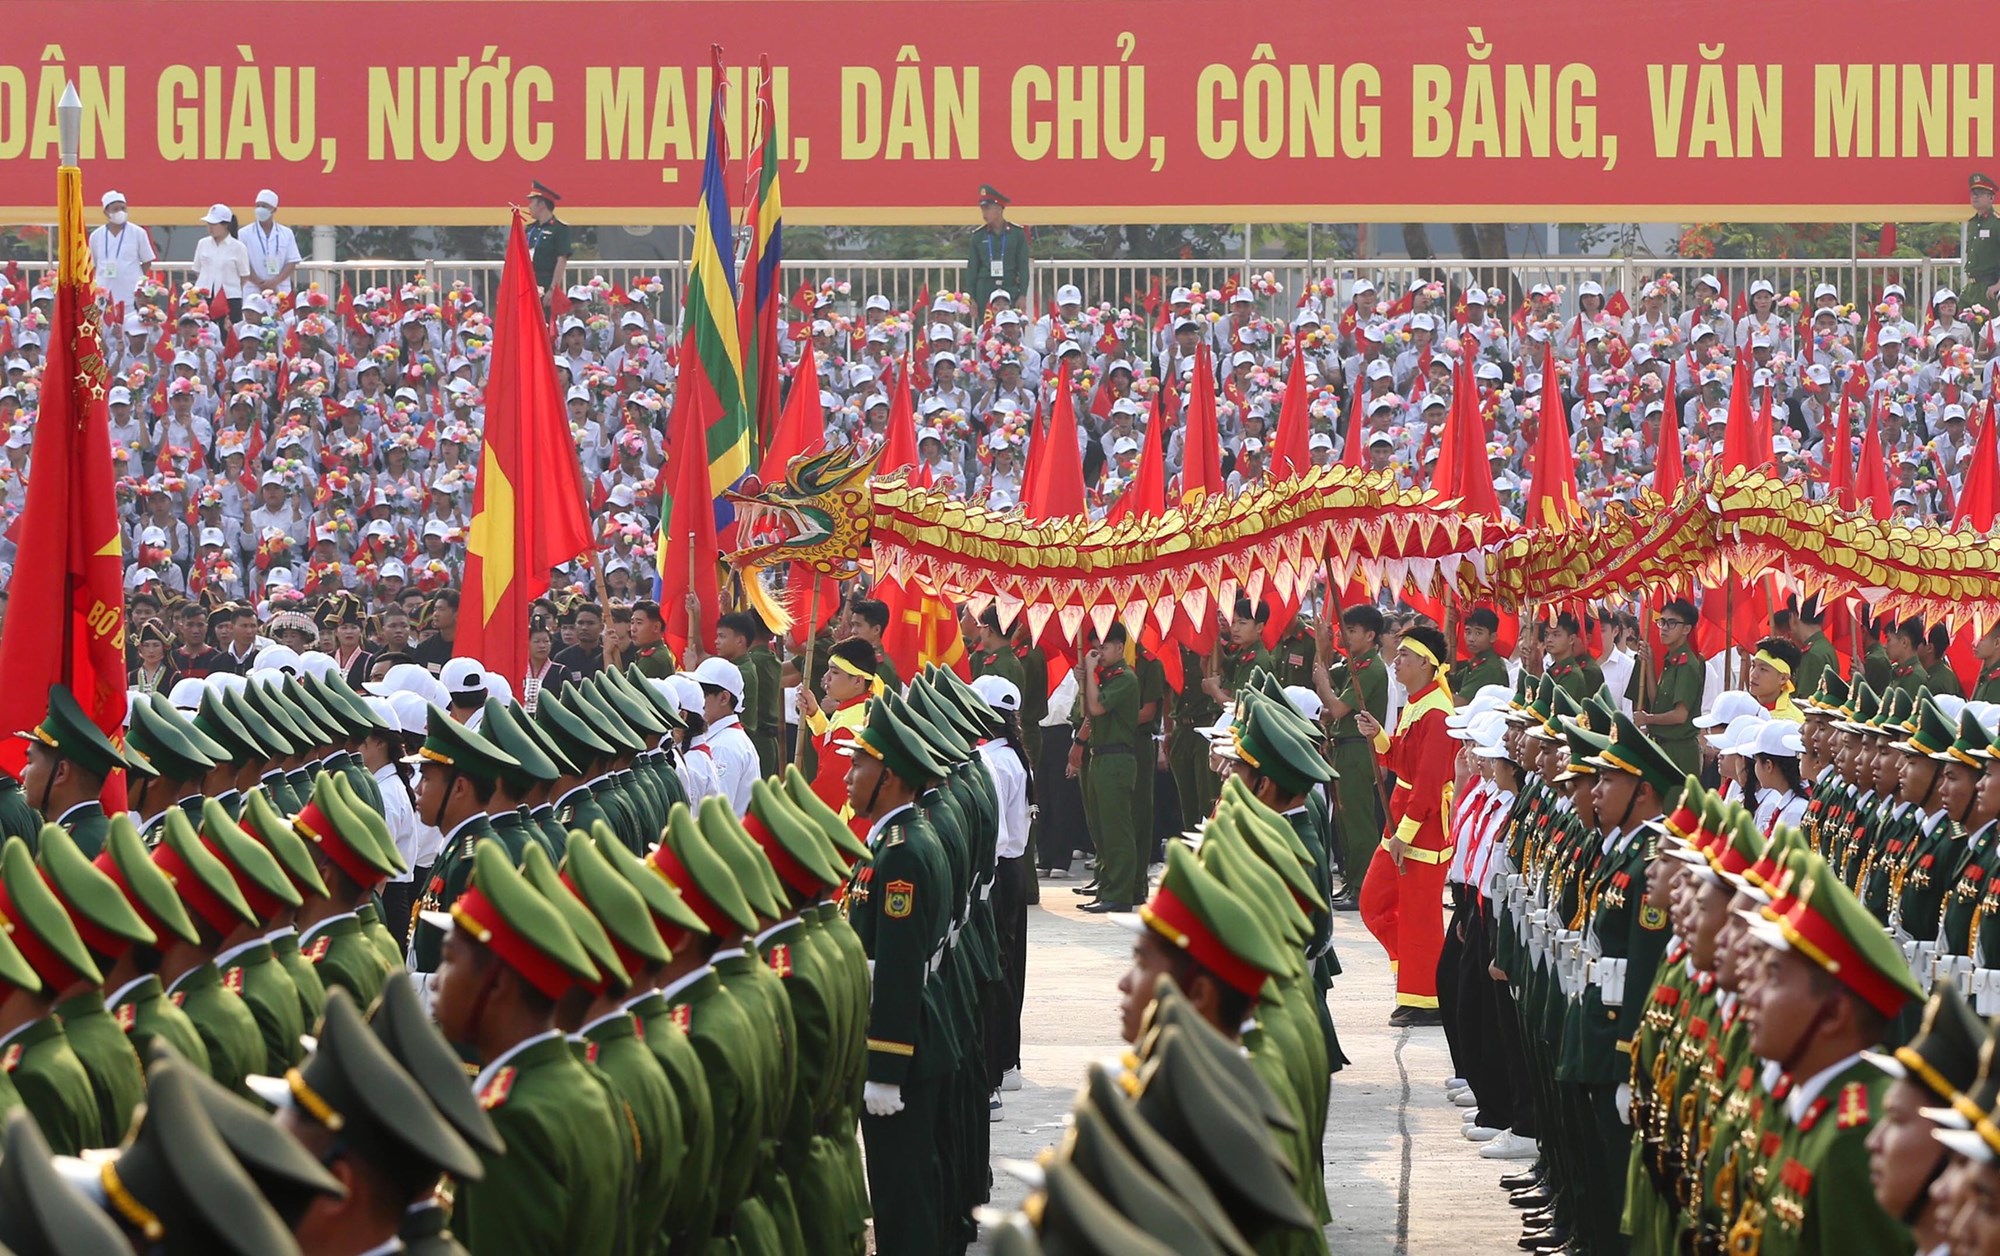 Tổng duyệt diễu binh, diễu hành kỷ niệm 70 năm Chiến thắng Điện Biên Phủ - ảnh 12